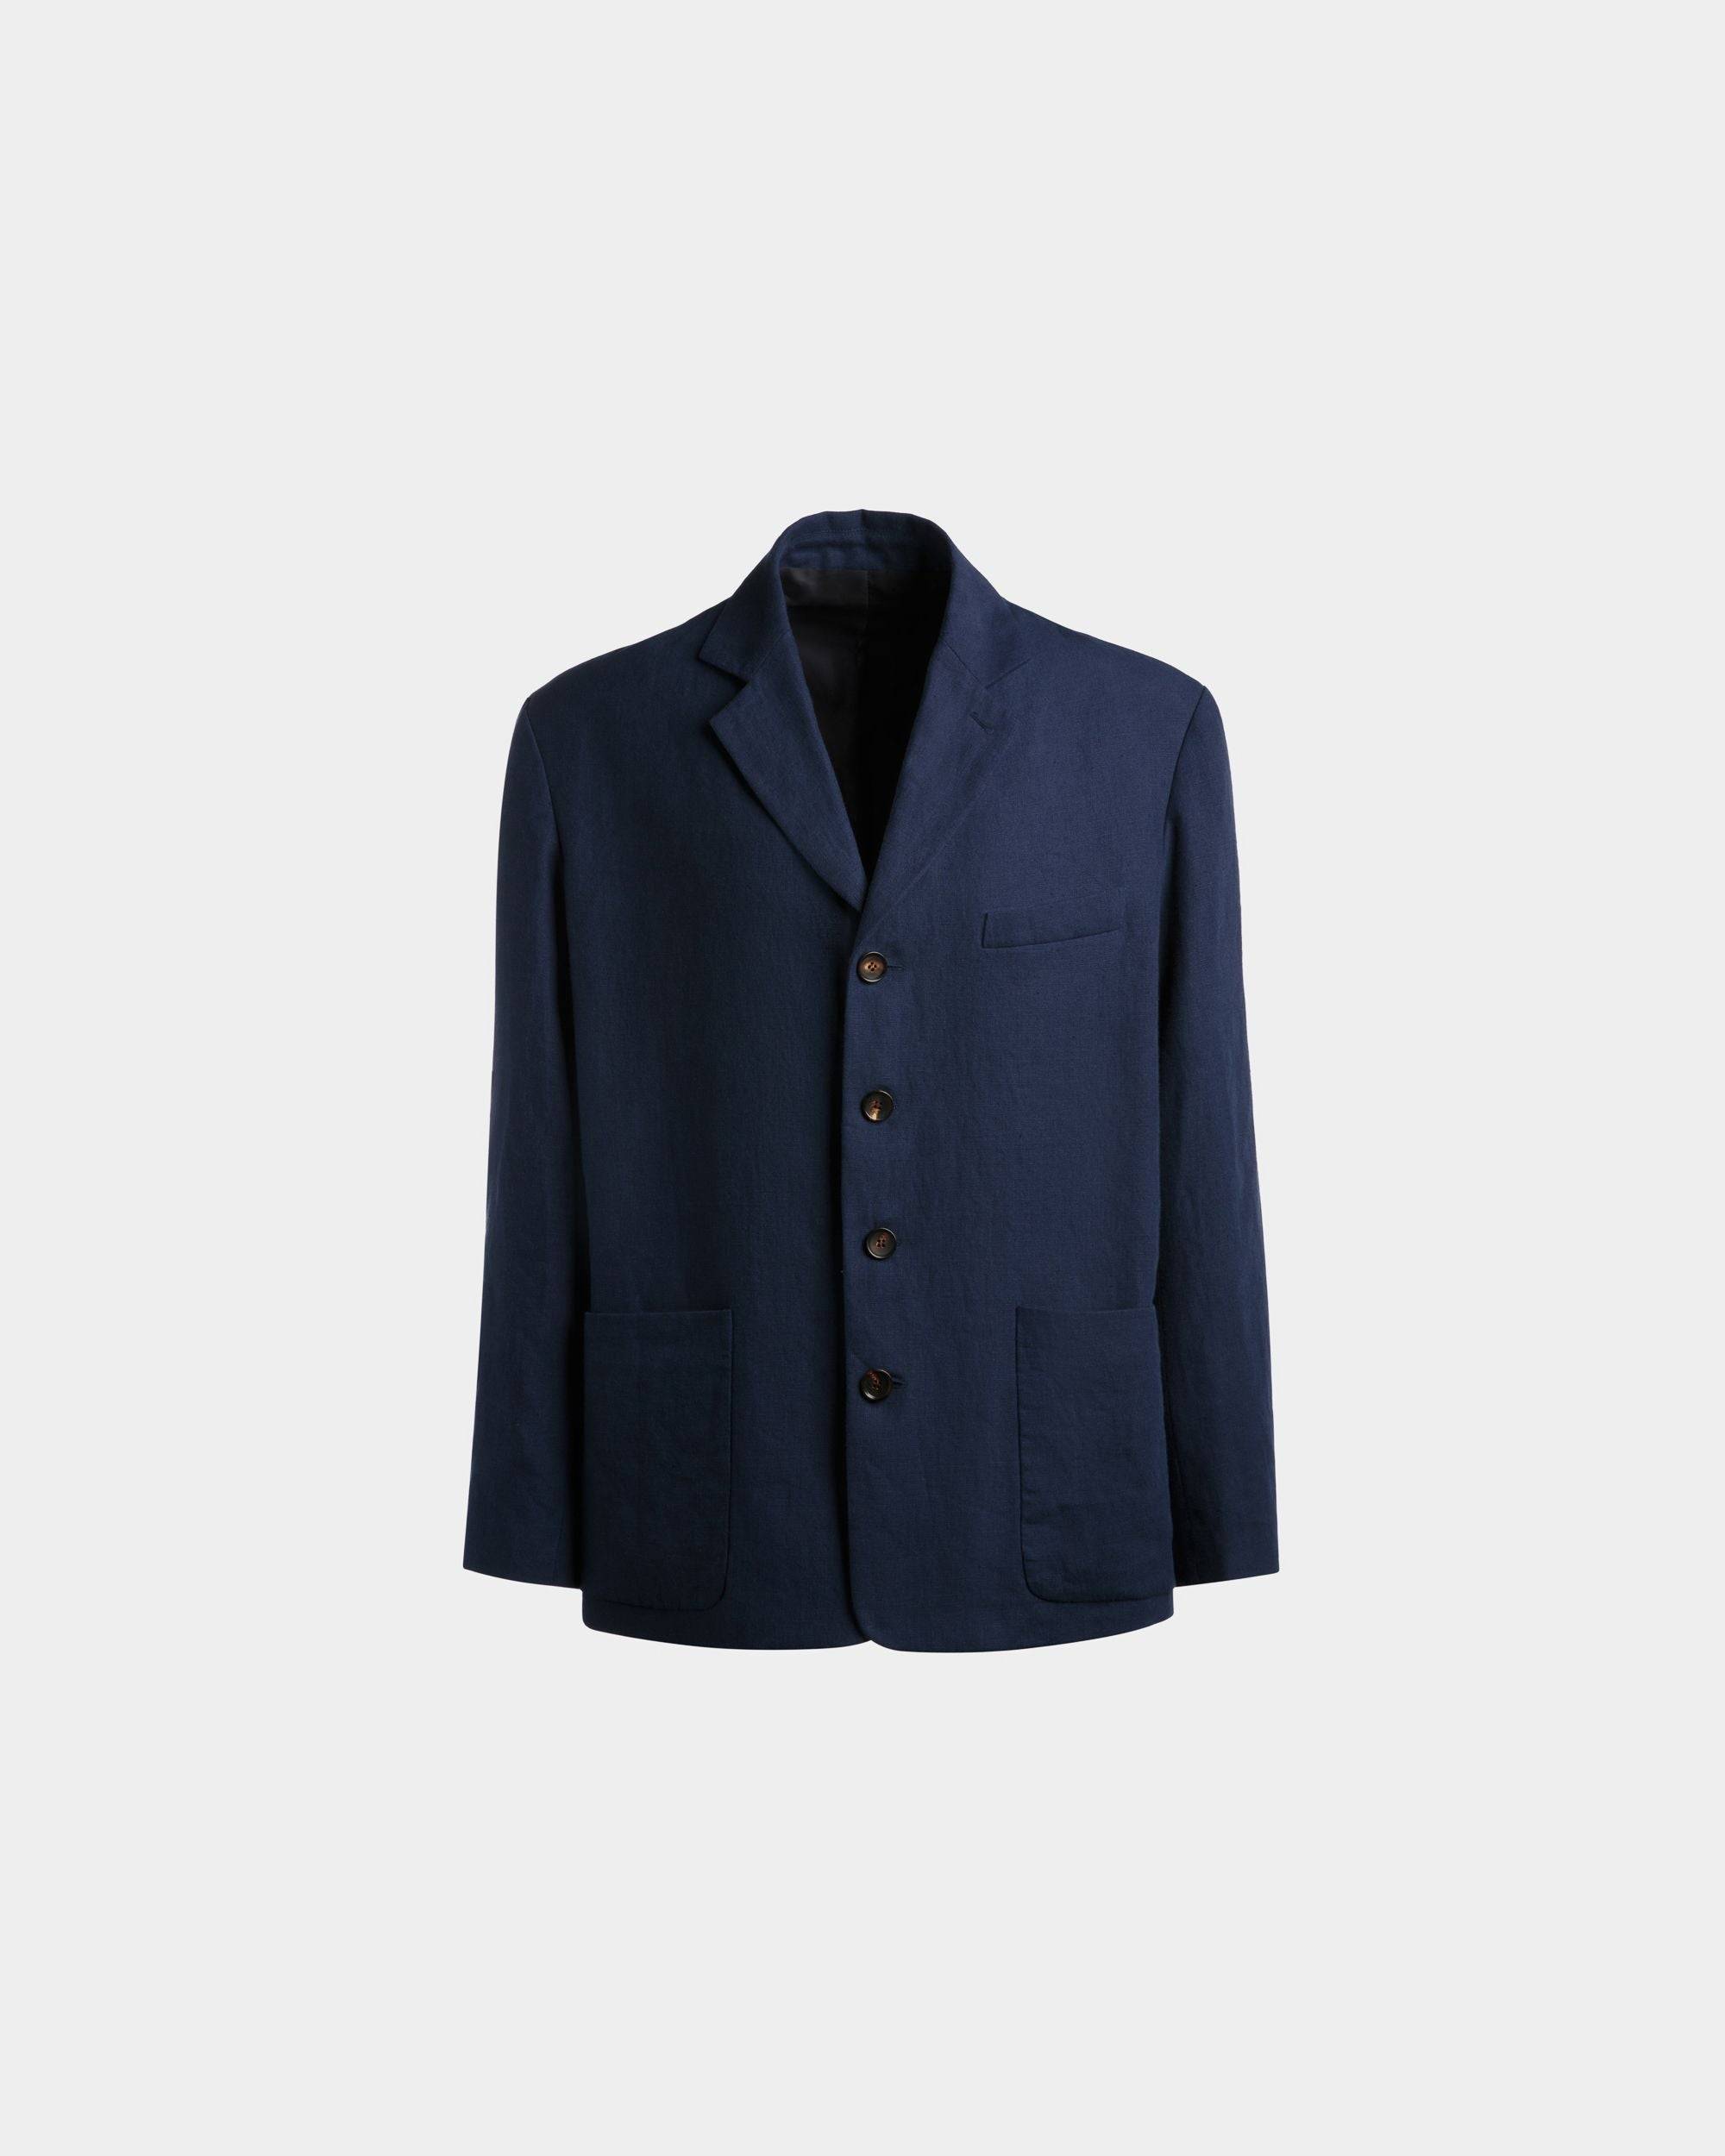 Men's Jacket in Navy Blue Linen | Bally | Still Life Front